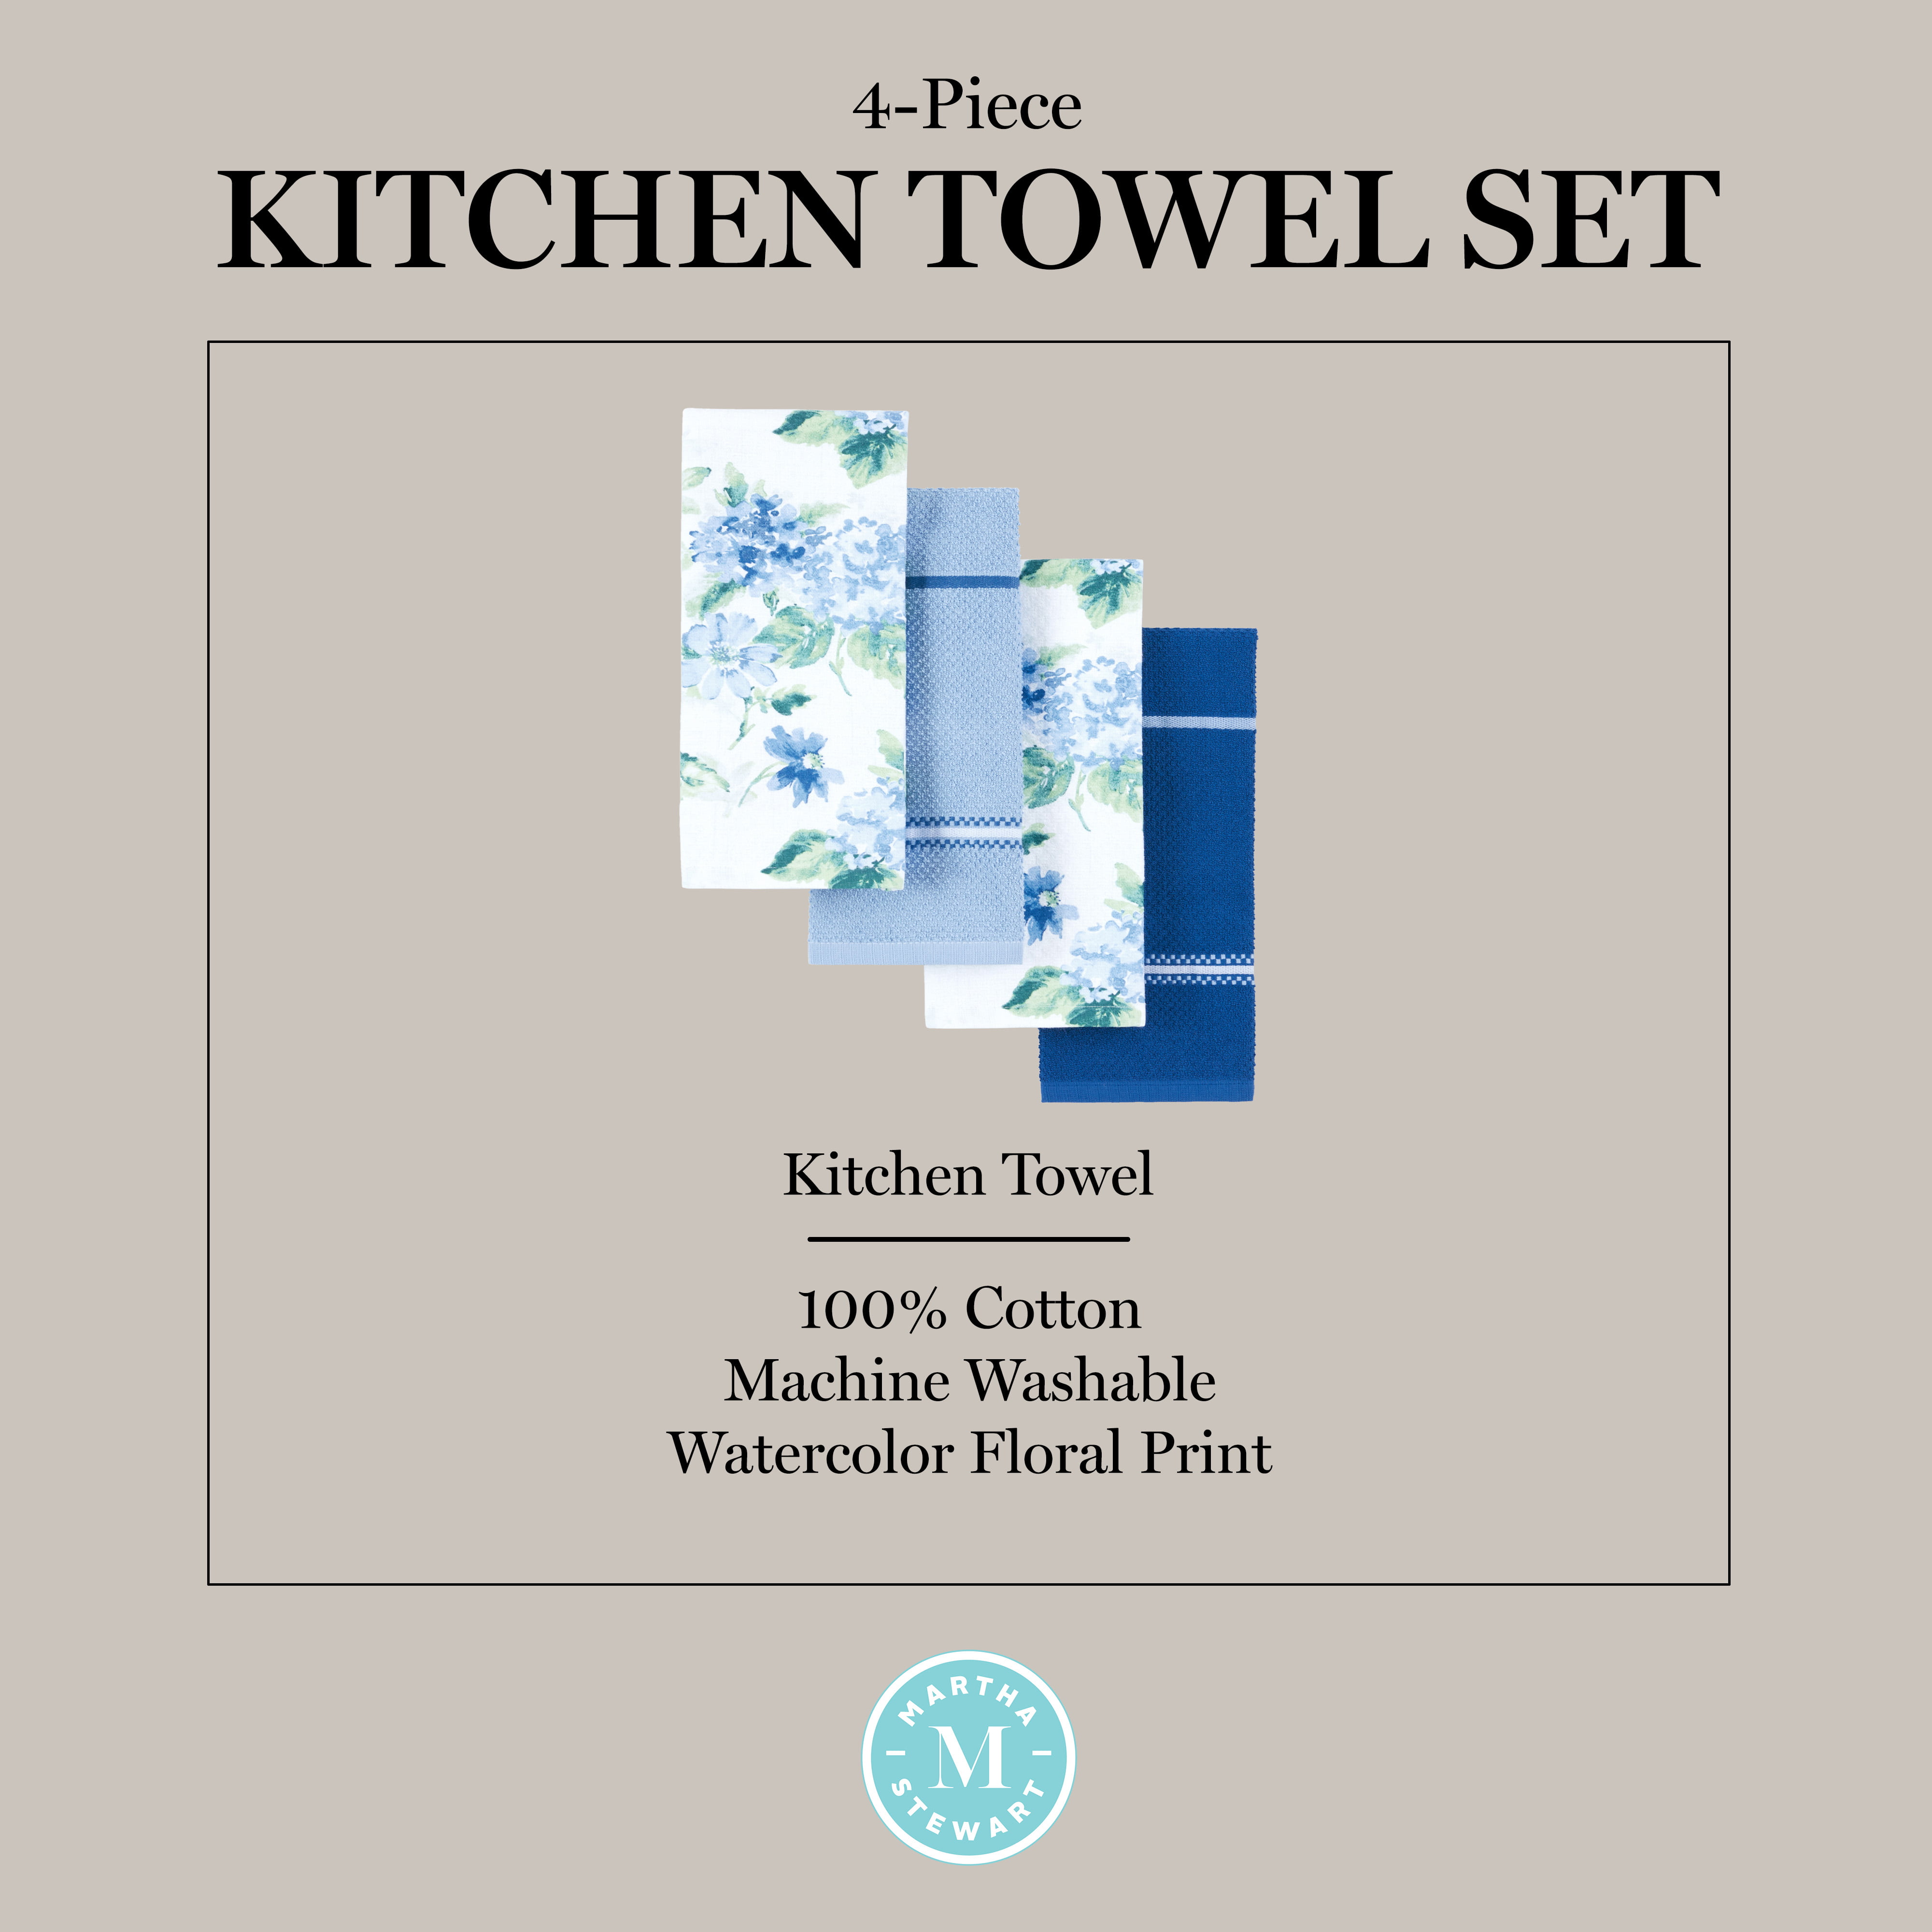 MARTHA STEWART Dual Purpose Kitchen Towel 2-Pack Set, Strie Medallion,  16x28